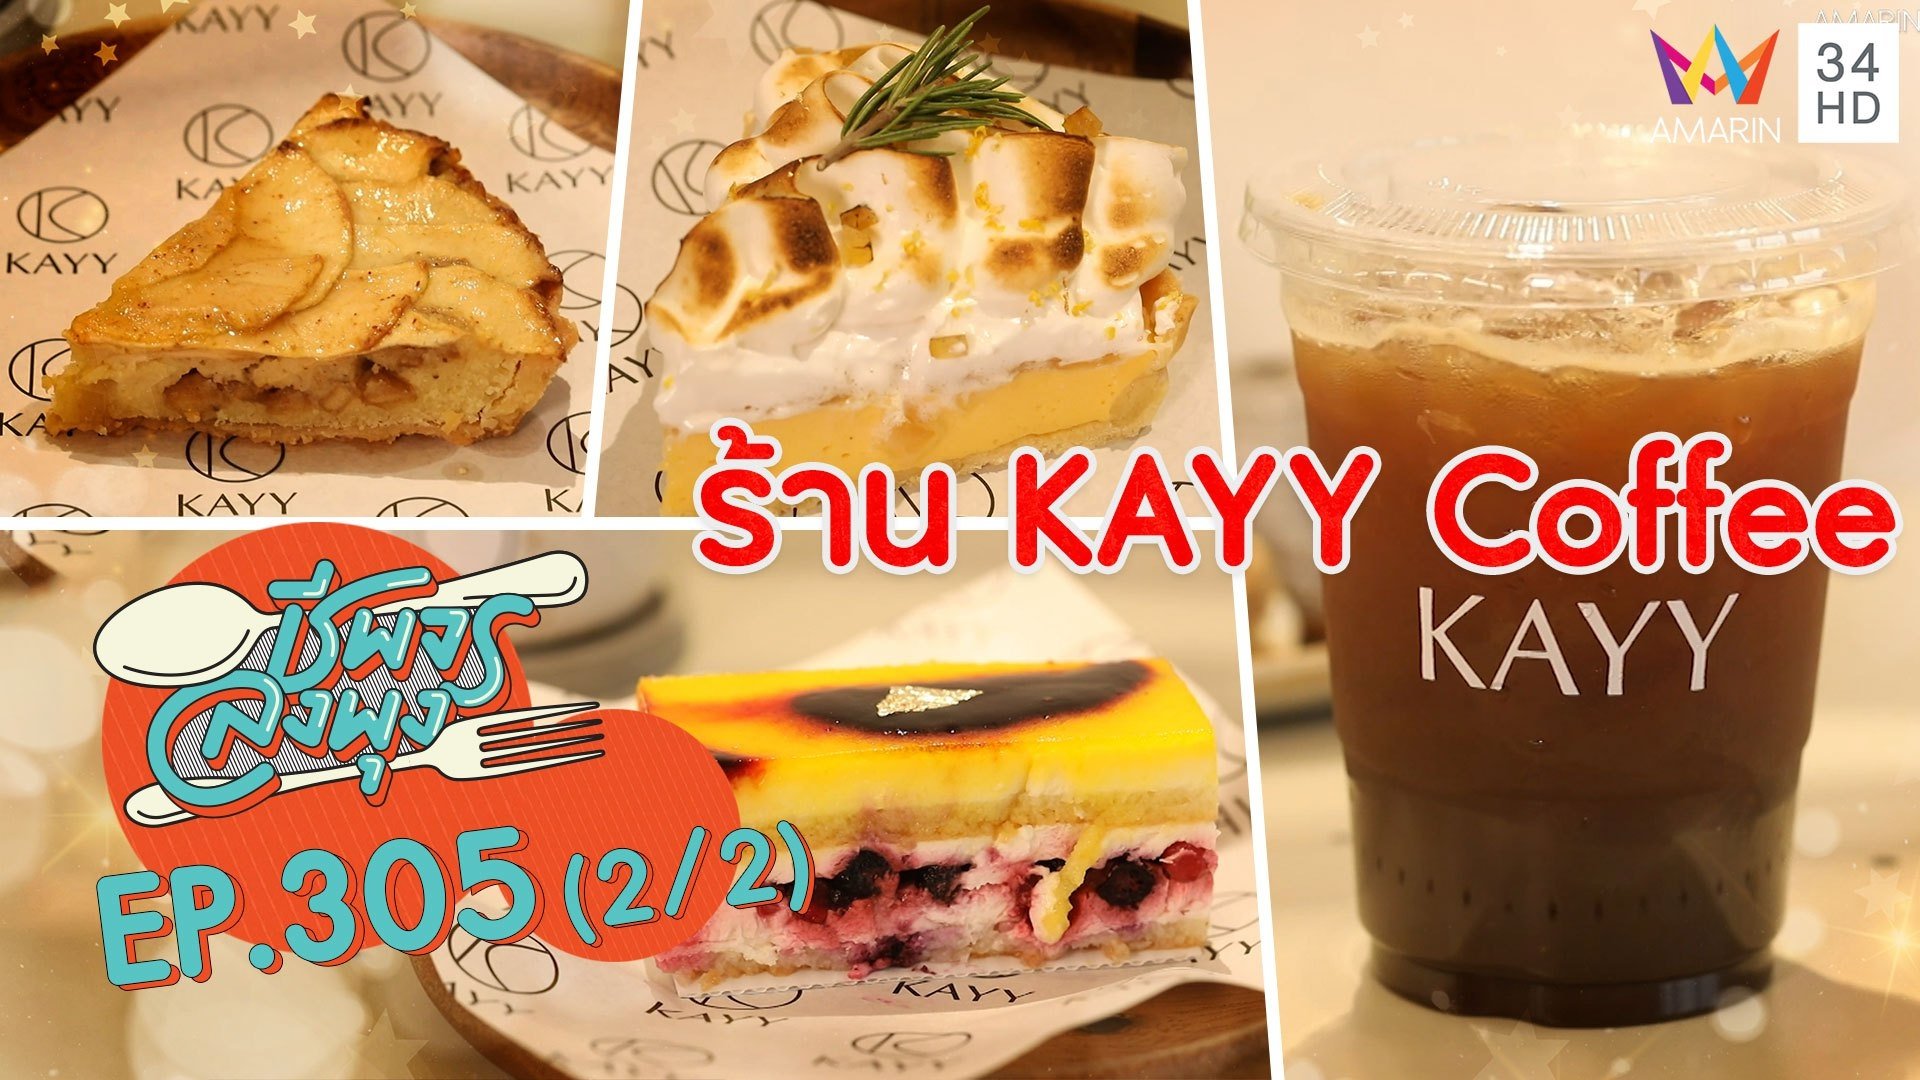 นั่งจิบกาแฟ และฟินกับขนมอร่อย @ ร้าน KAYY Coffee | ชีพจรลงพุง | 20 มิ.ย. 64 (2/2) | AMARIN TVHD34